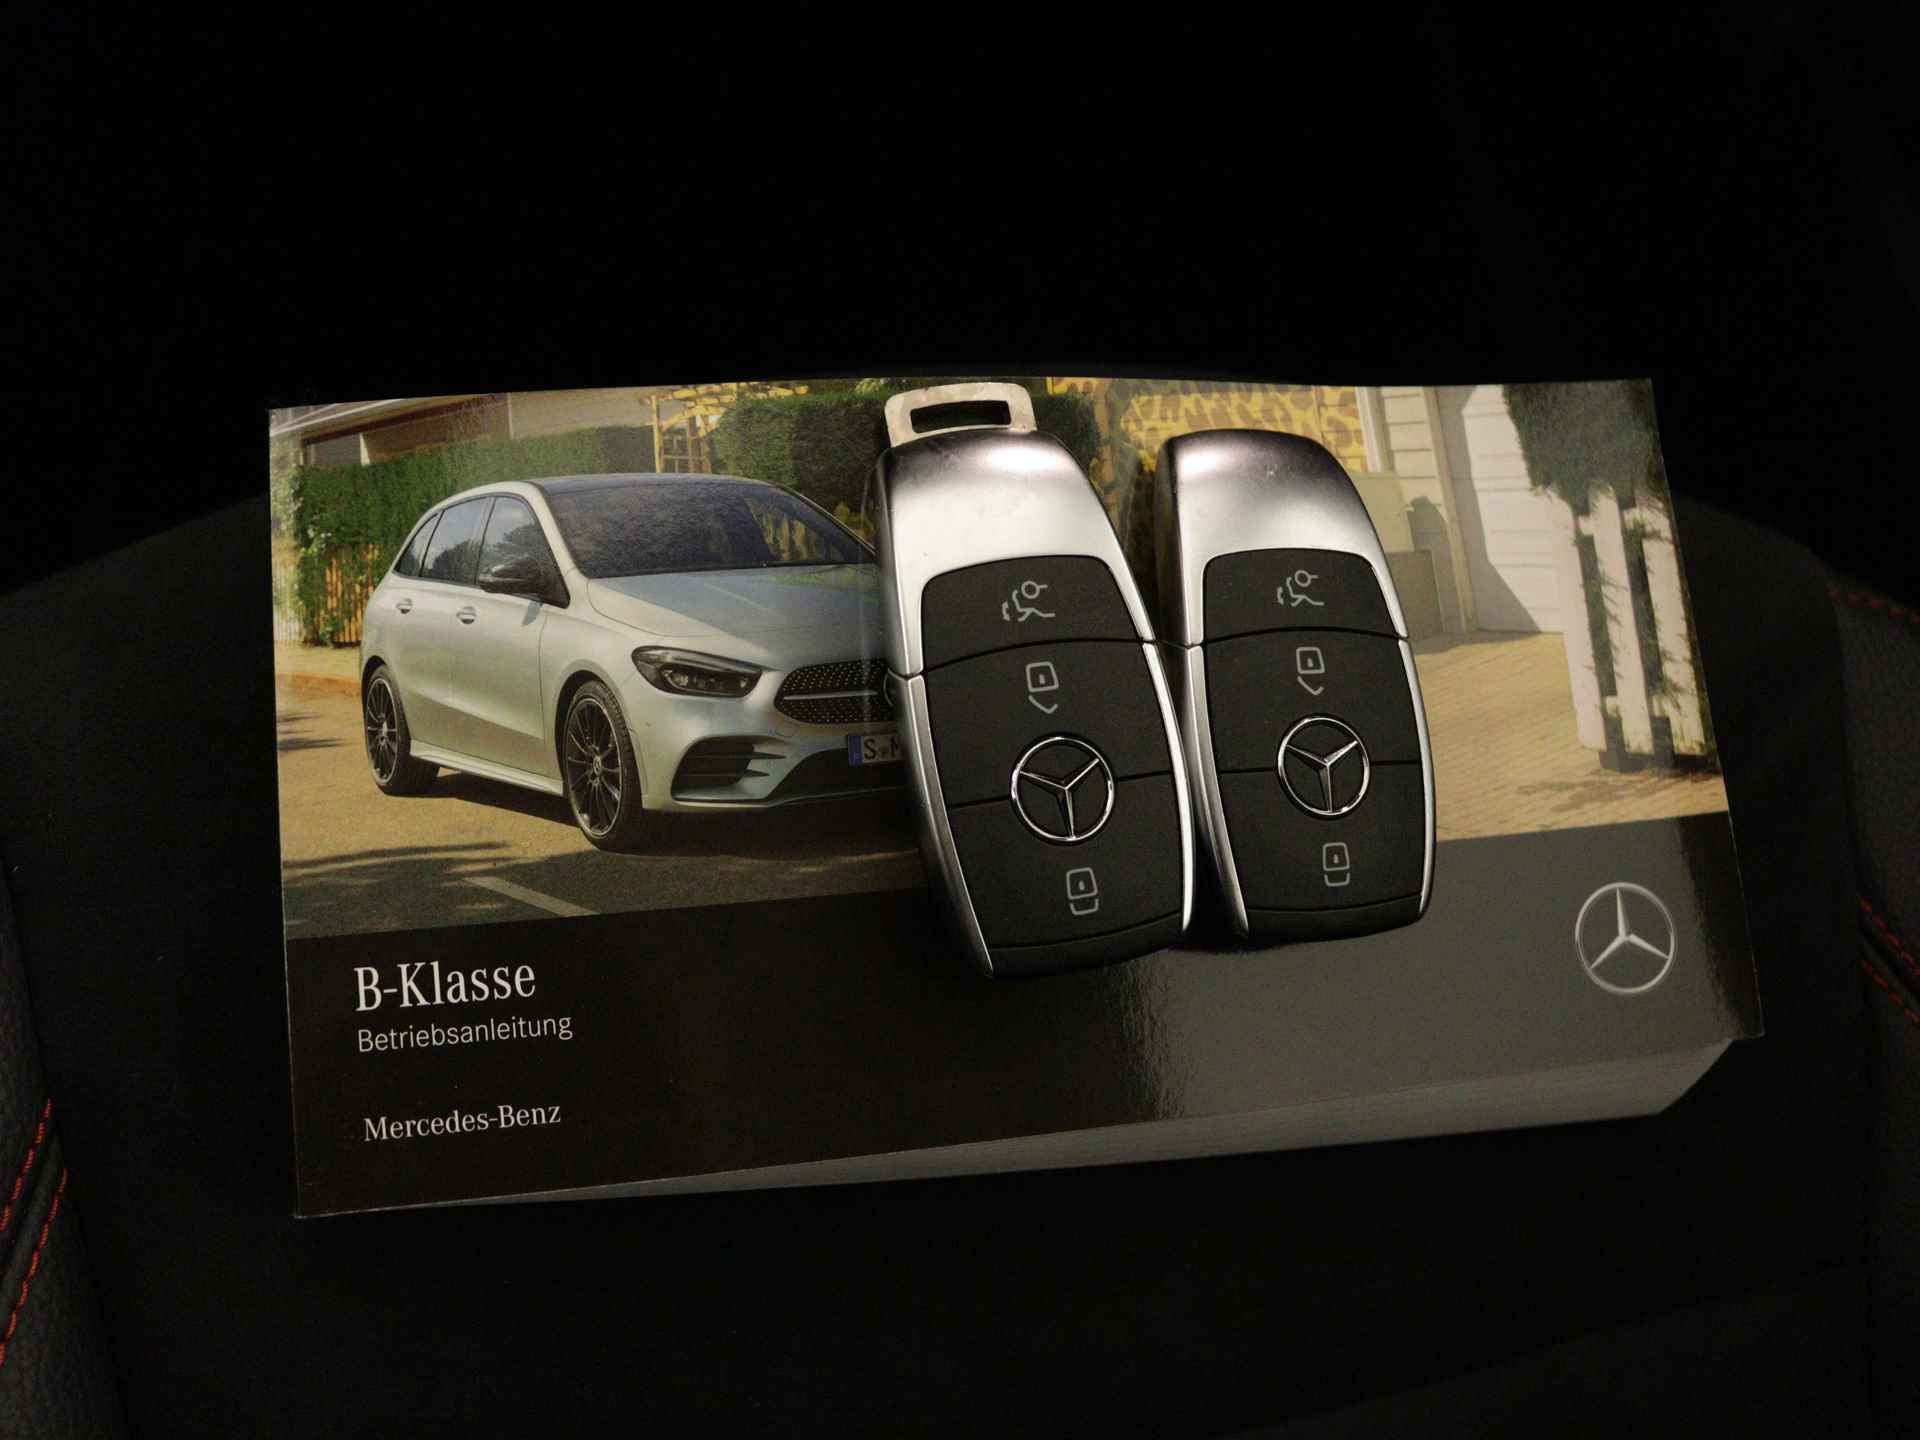 Mercedes-Benz B-Klasse 250 e AMG Line Limited Multispaaks lichtmetalen velgen | MBUX wide screen | Navigatie | Parking support | Inclusief 24 maanden Mercedes-Benz Certified garantie voor Europa. | - 14/45